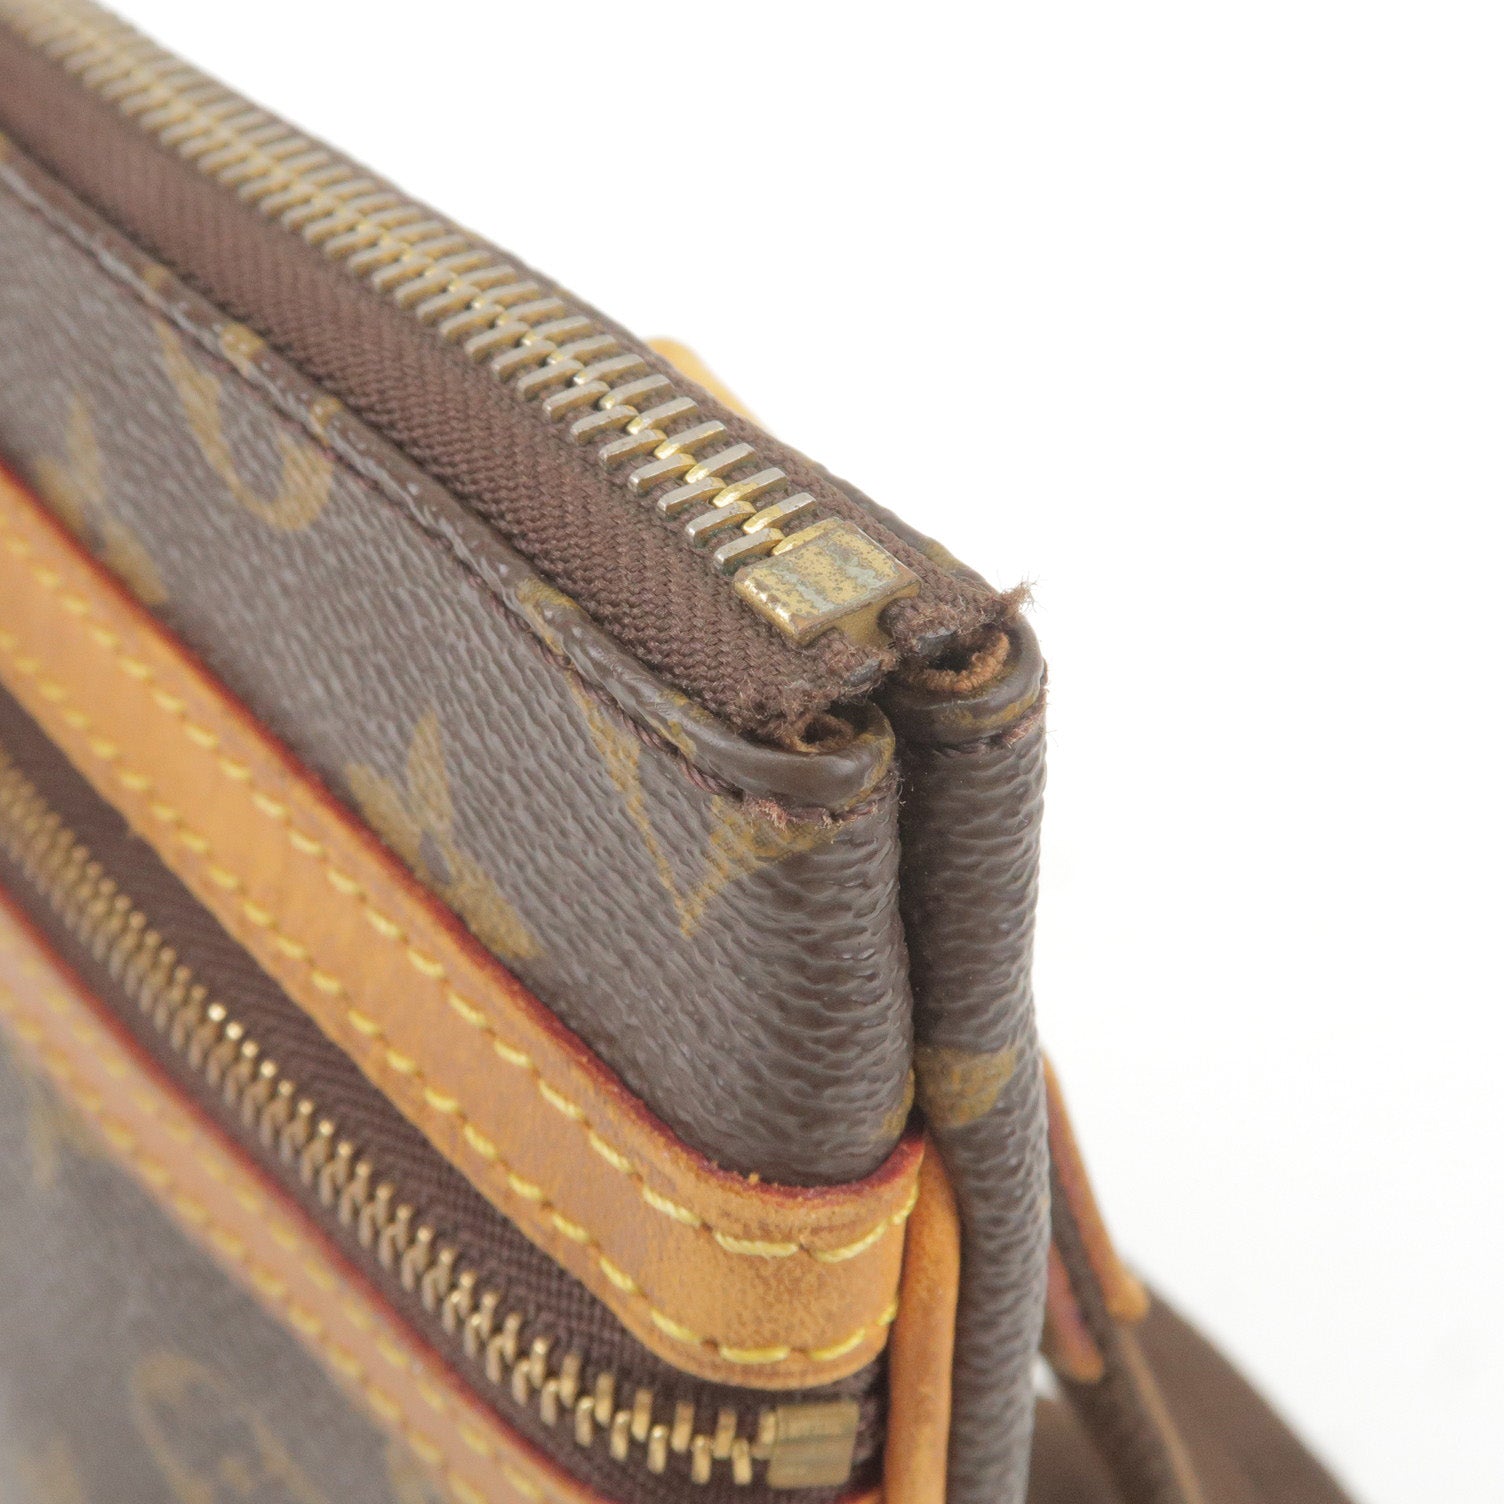 Louis - M40044 – dct - Pochette - Shoulder - Louis Vuitton pre-owned  monogram Ellipse PM handbag - Monogram - Bag - ep_vintage luxury Store -  Vuitton - Bosphore